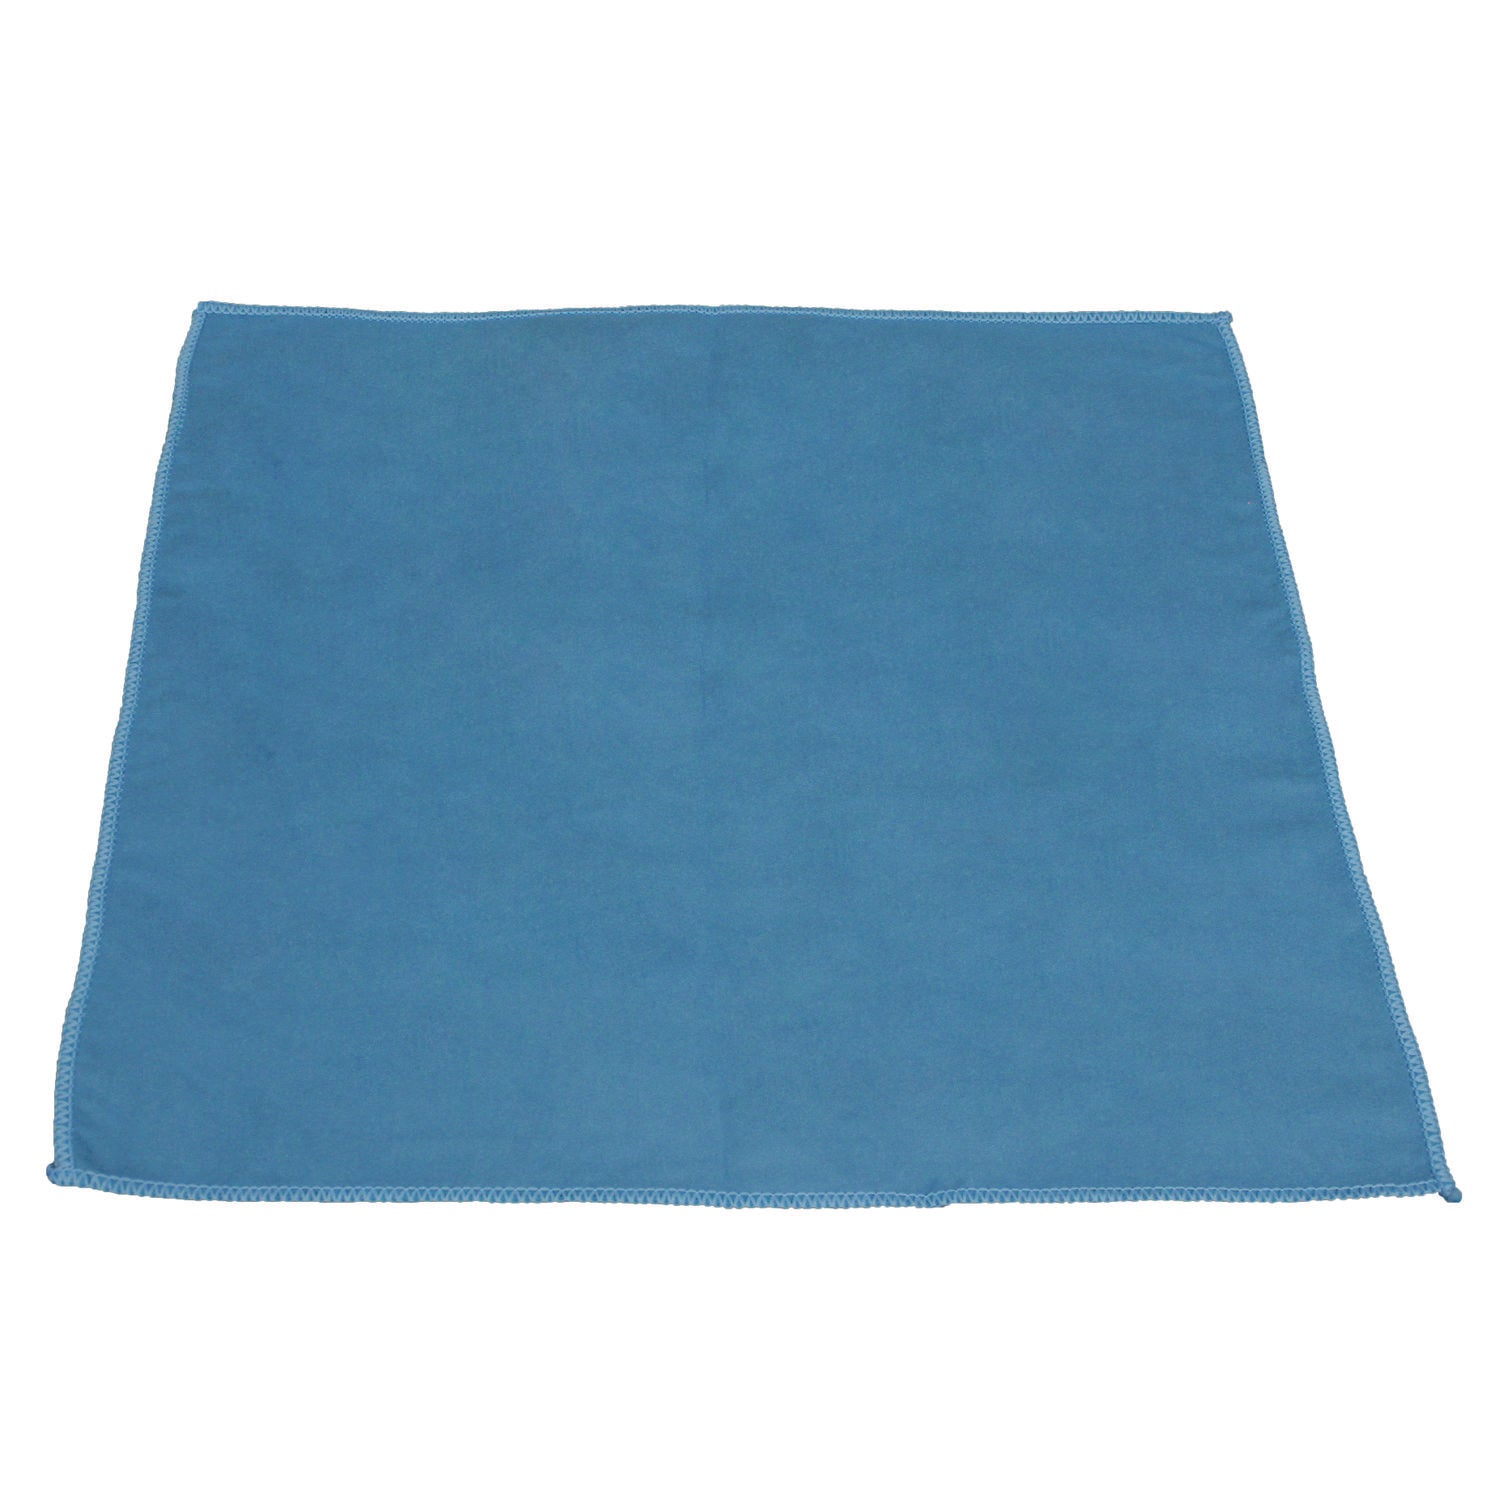 lightweight-microfiber-cloths-16-x-16-blue-12-pack-18-packs-carton_implfk100 - 1